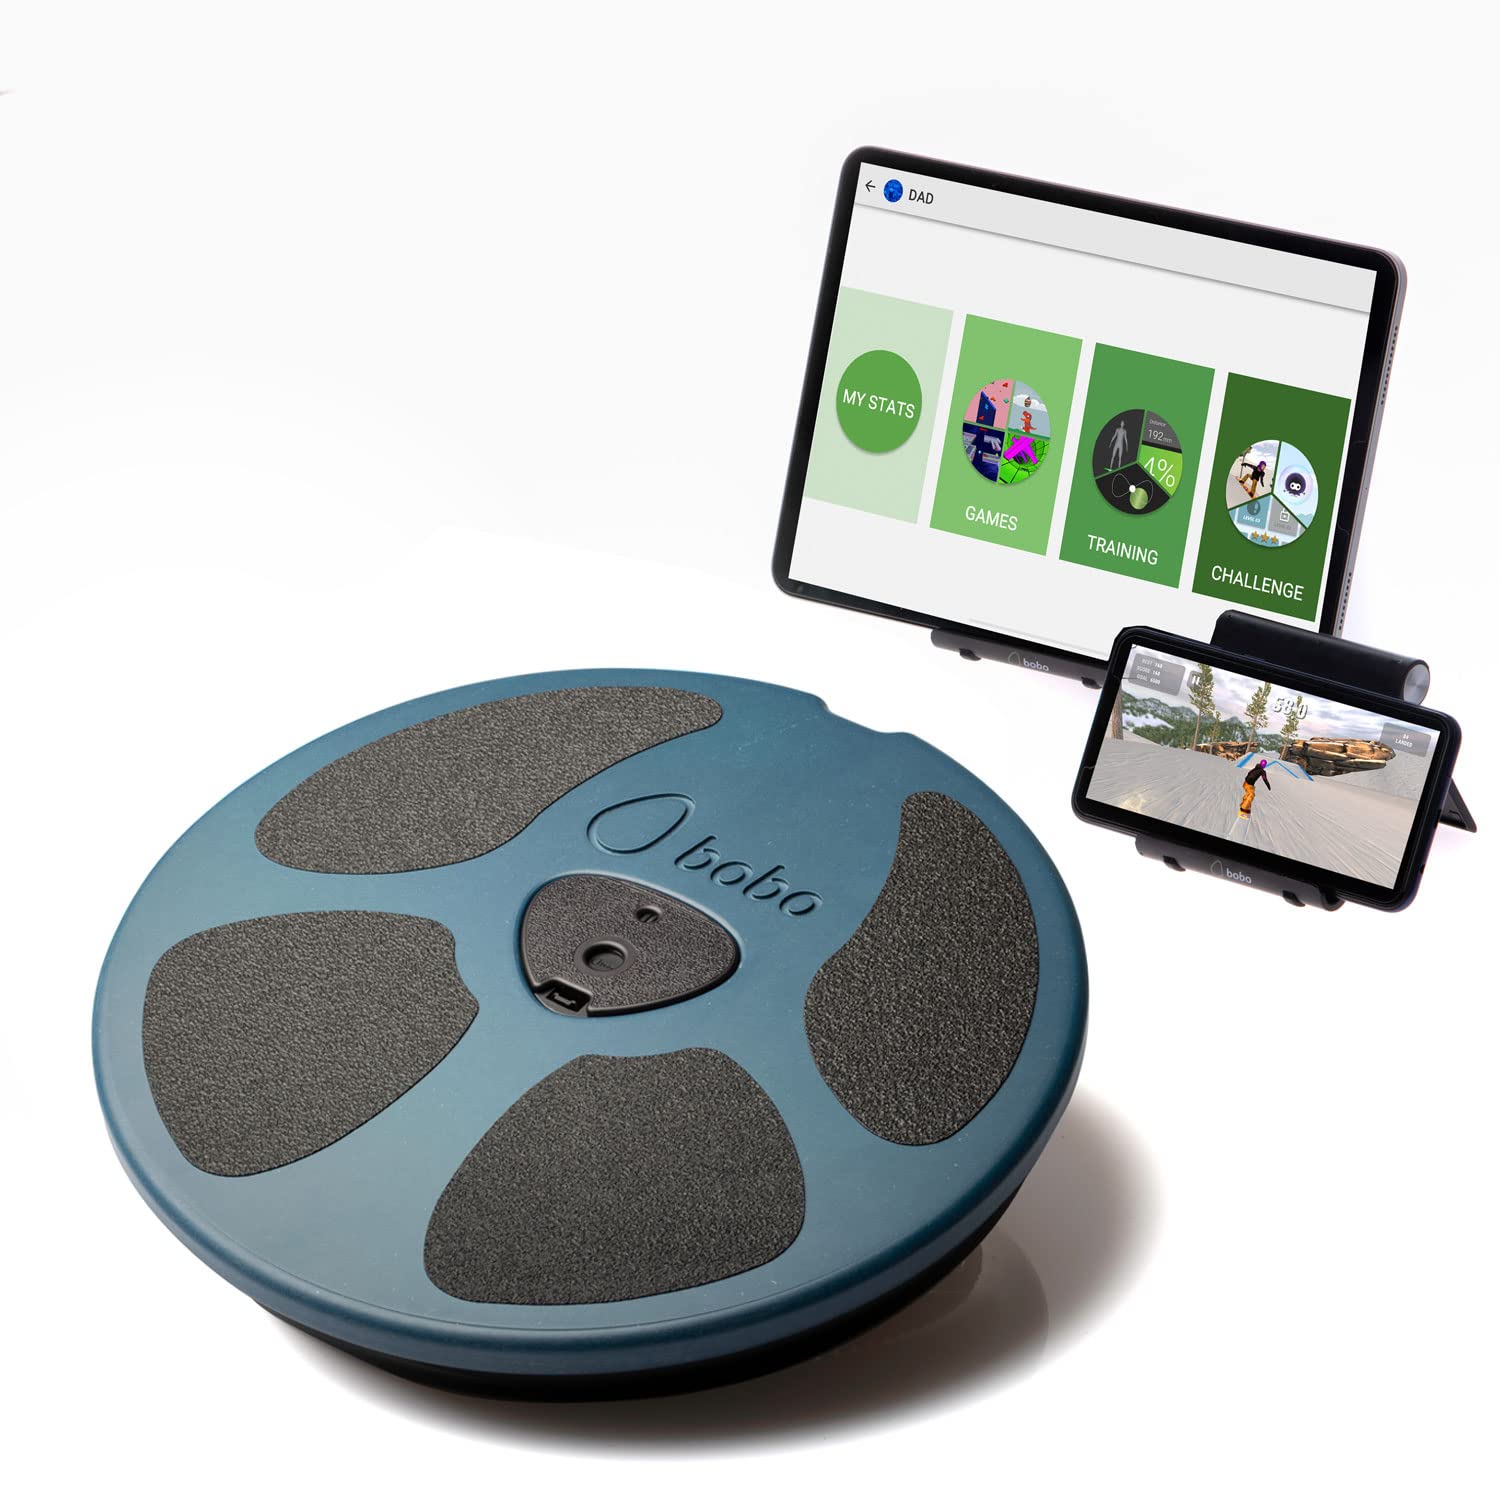 送料無料BoBo Core Trainer Balance Board Whole Family Fitness Device with Free Connected Game Exercises App. Profession